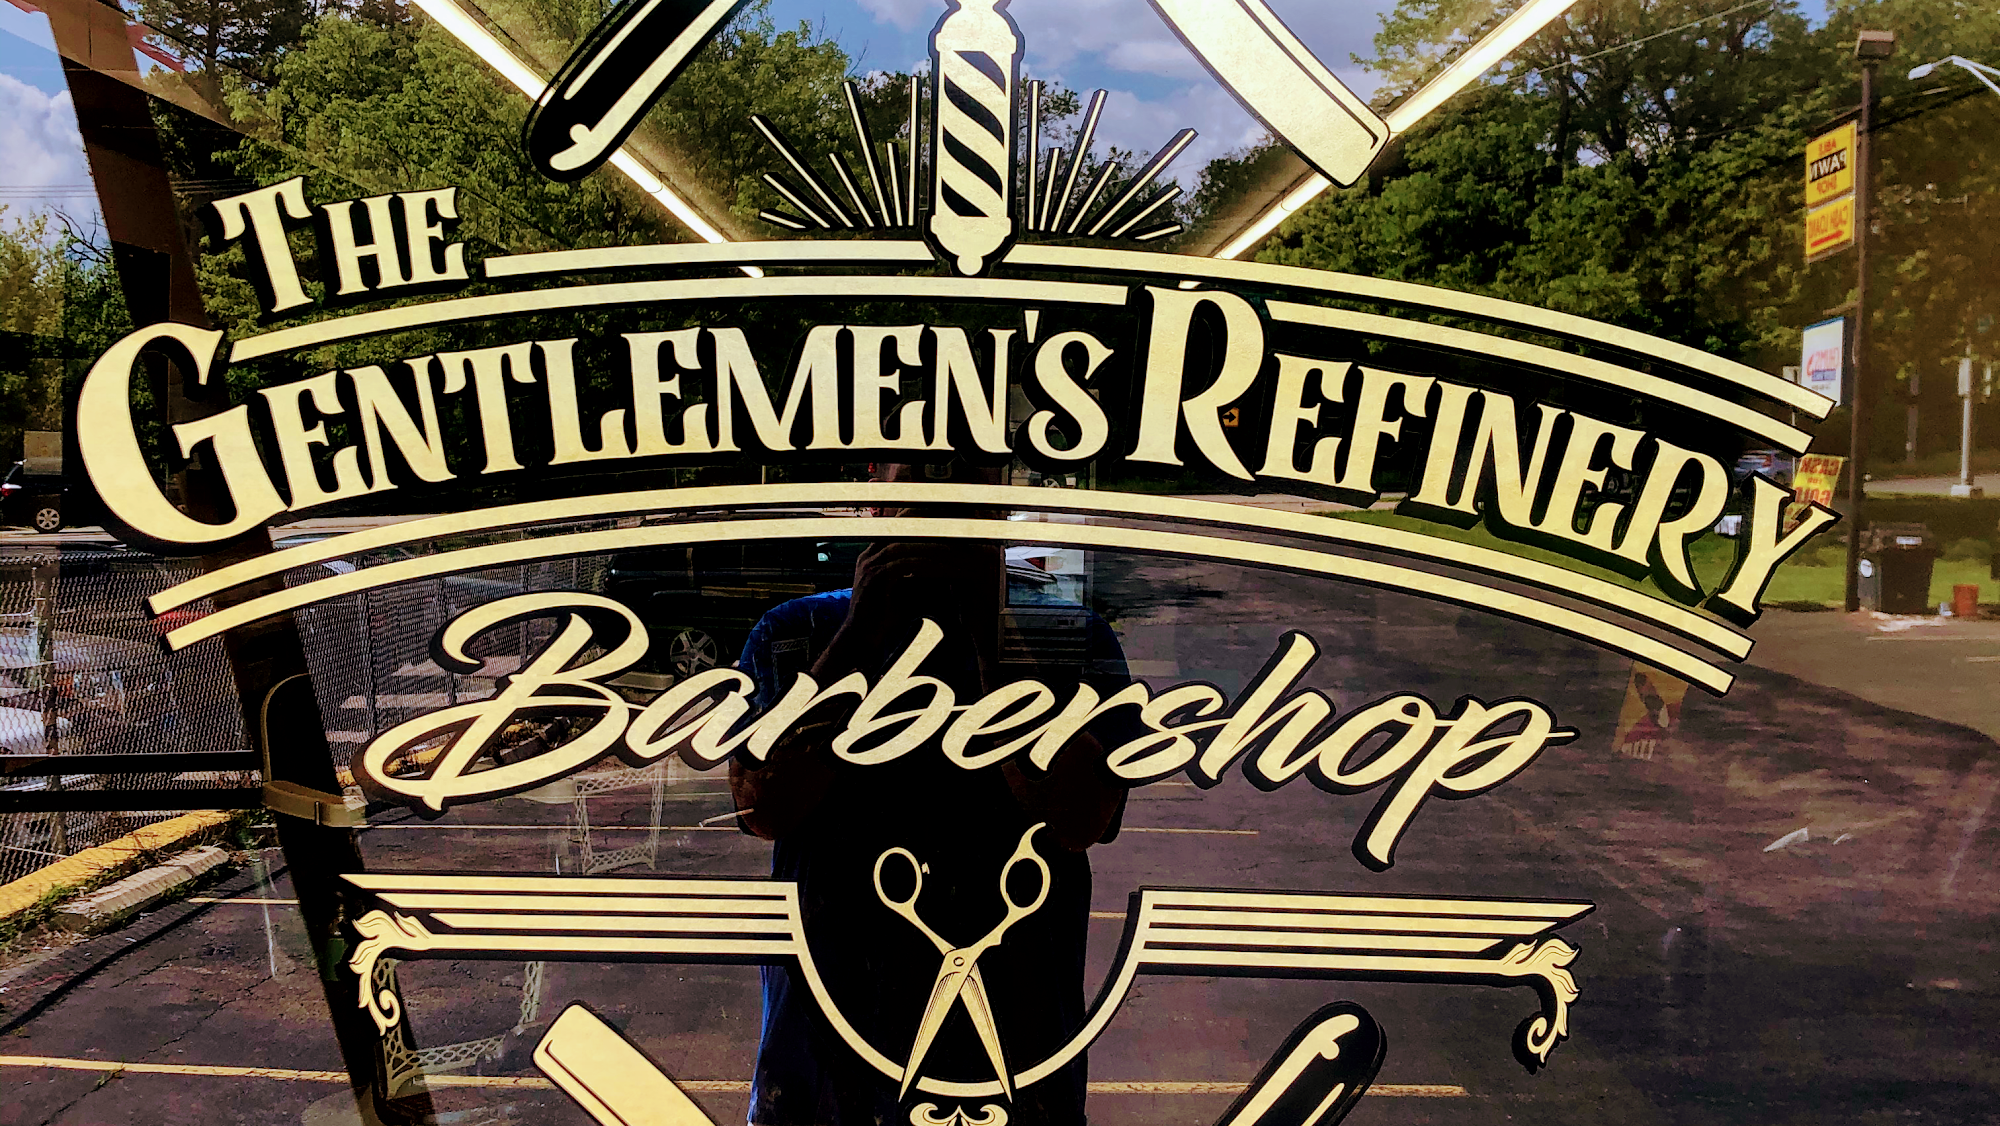 The Gentlemen’s Refinery Barber Shop